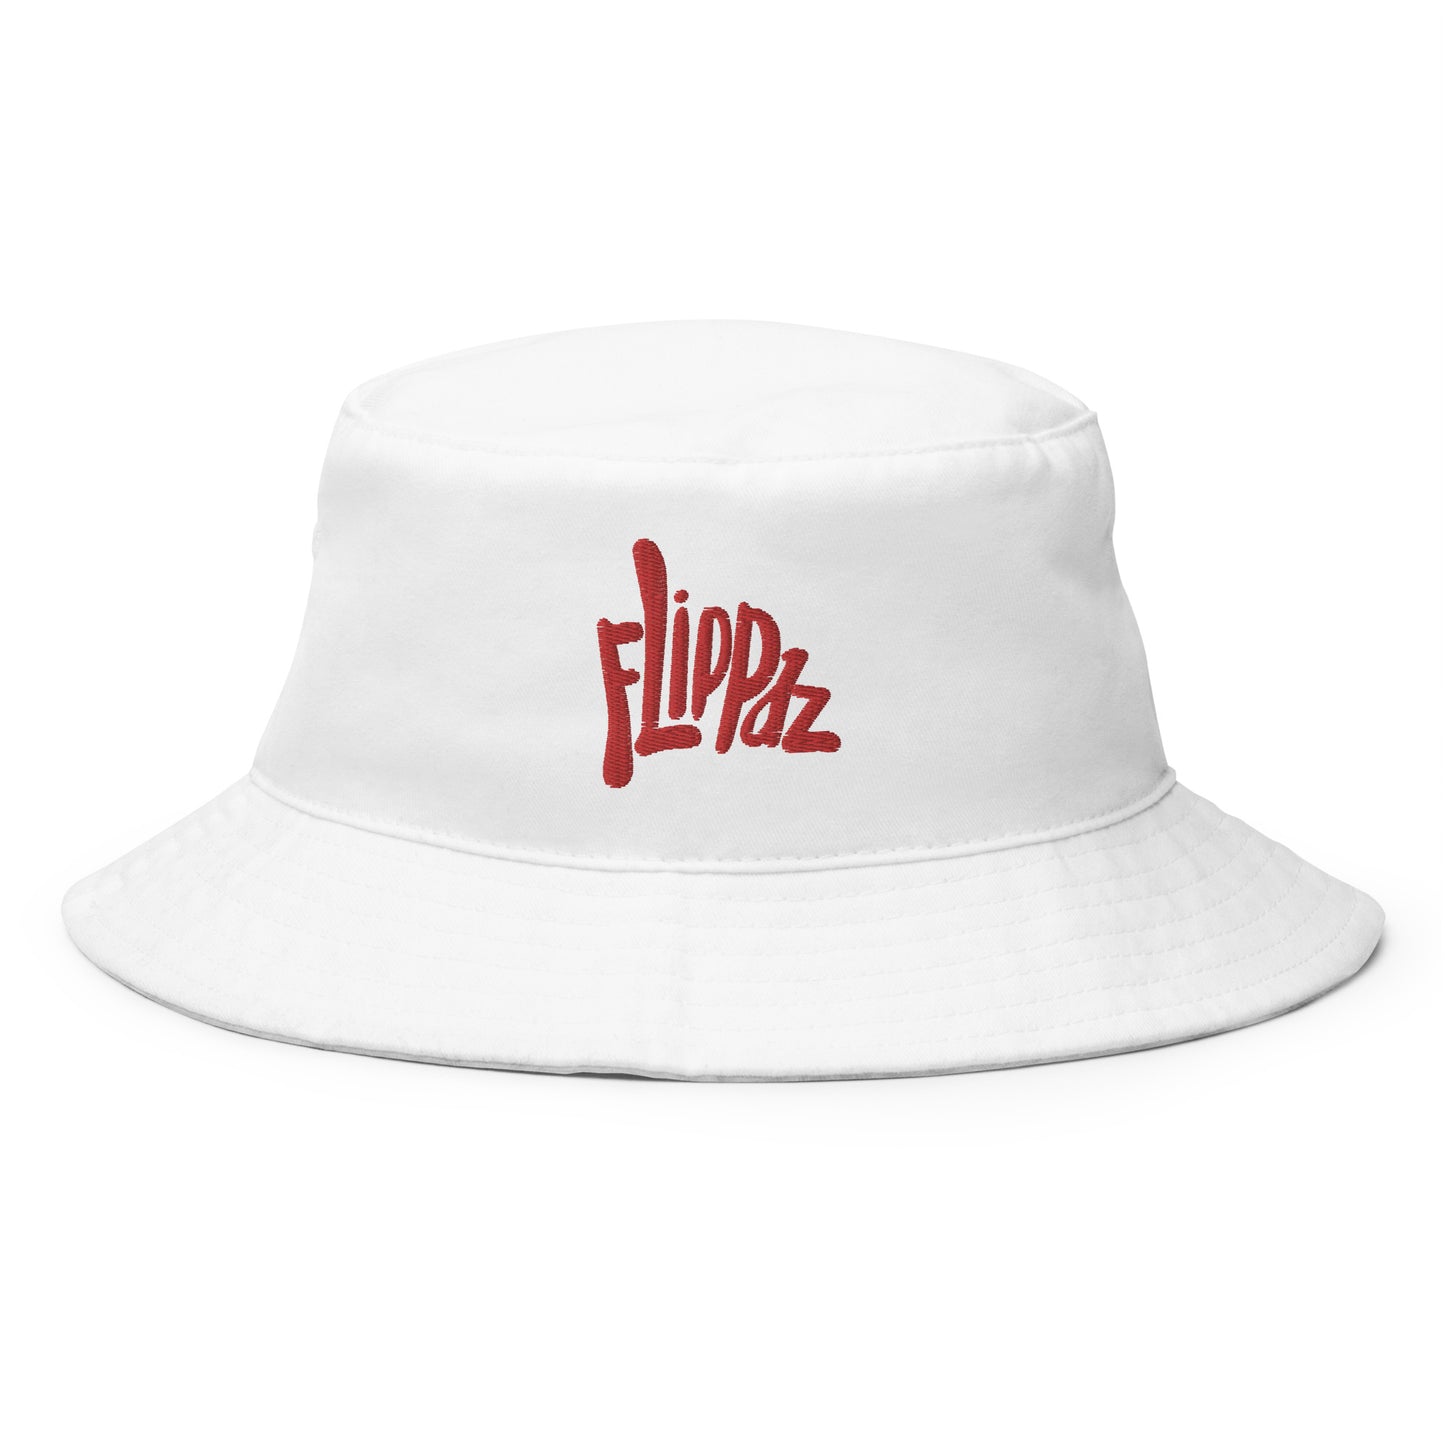 Flippaz Bucket Hat